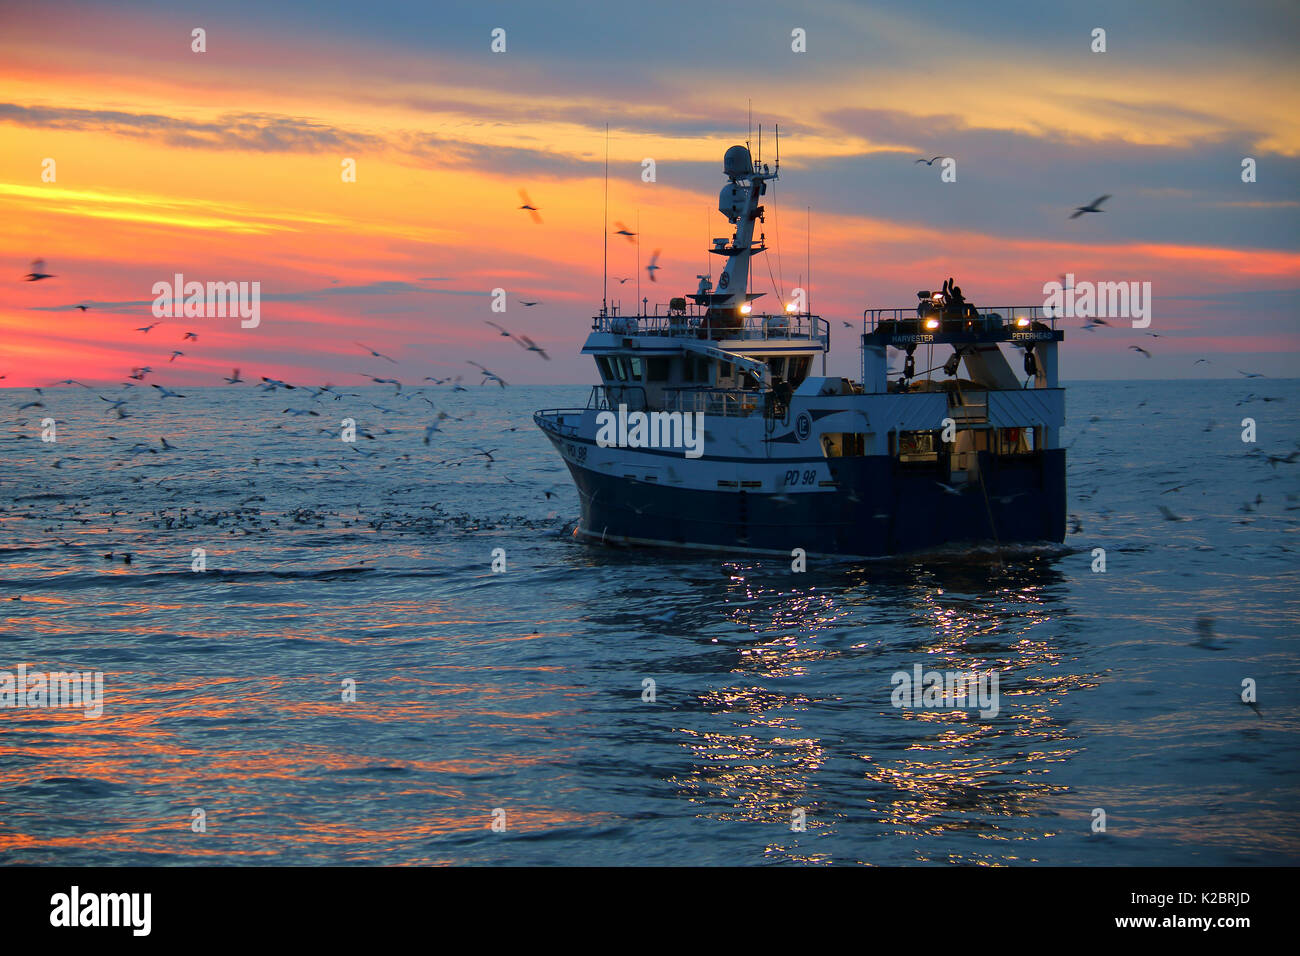 Fischereifahrzeug" Harvester" schleppen Fanggeräte wie Sonne über der Nordsee. Juli 2014. Eigentum veröffentlicht. Alle nicht-redaktionelle Verwendungen muß einzeln beendet werden. Stockfoto